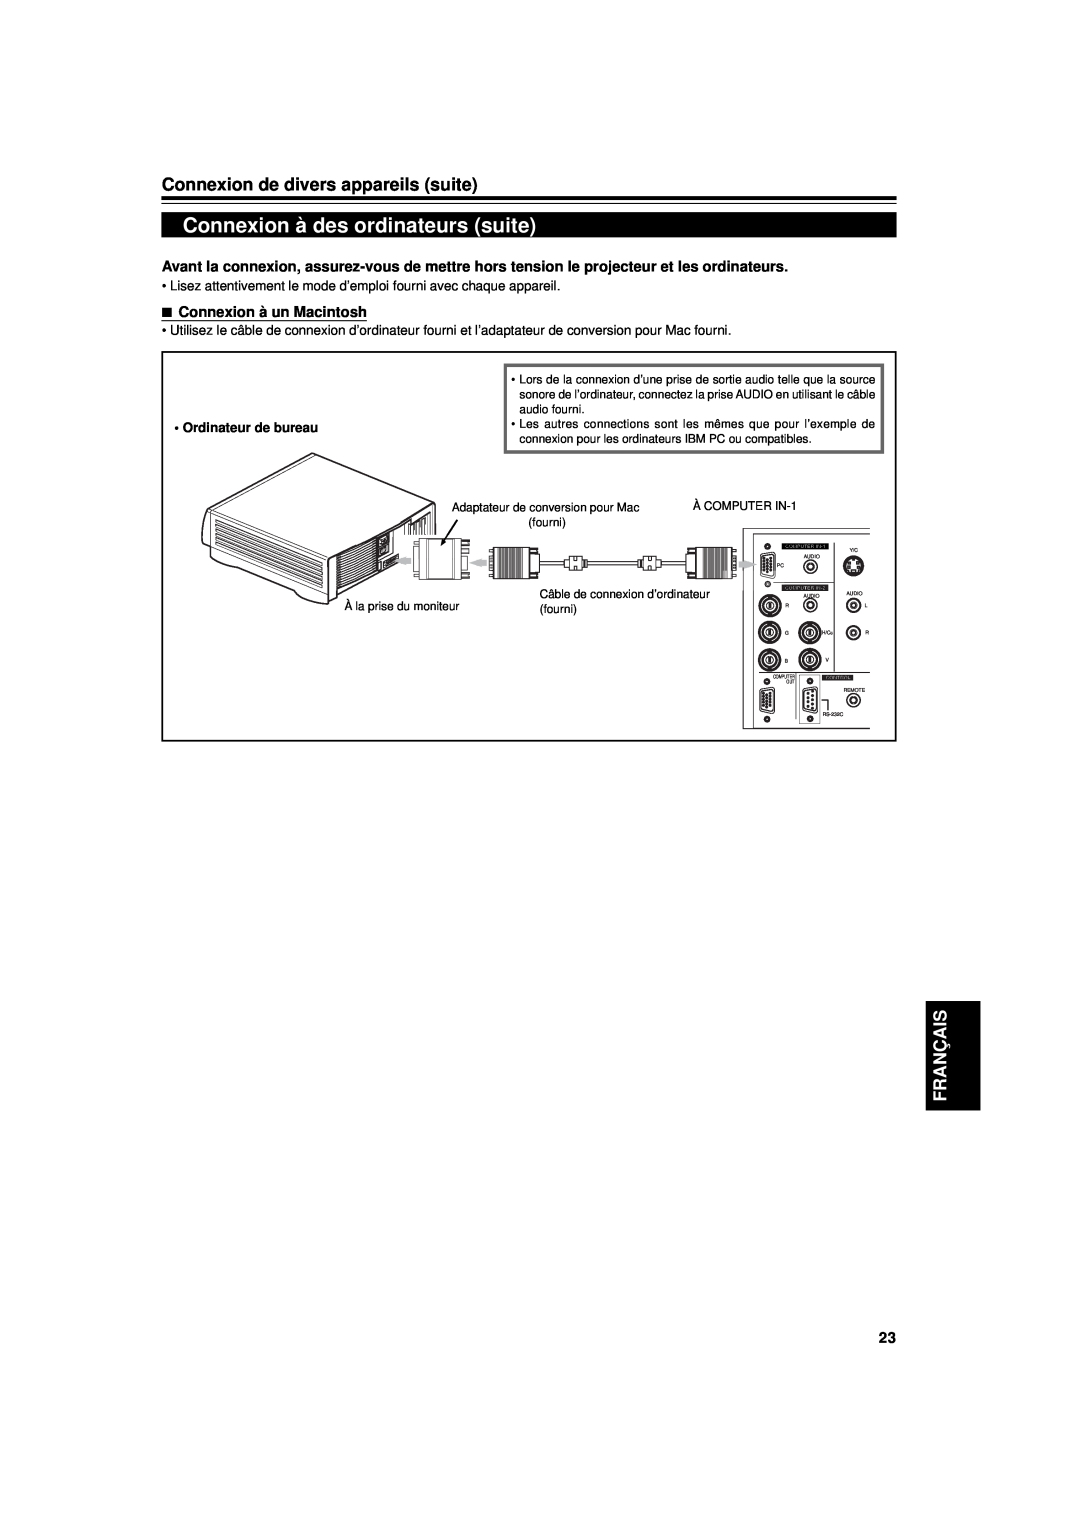 JVC DLA-G11U Connexion à des ordinateurs suite, Connexion de divers appareils suite, Français, Connexion à un Macintosh 